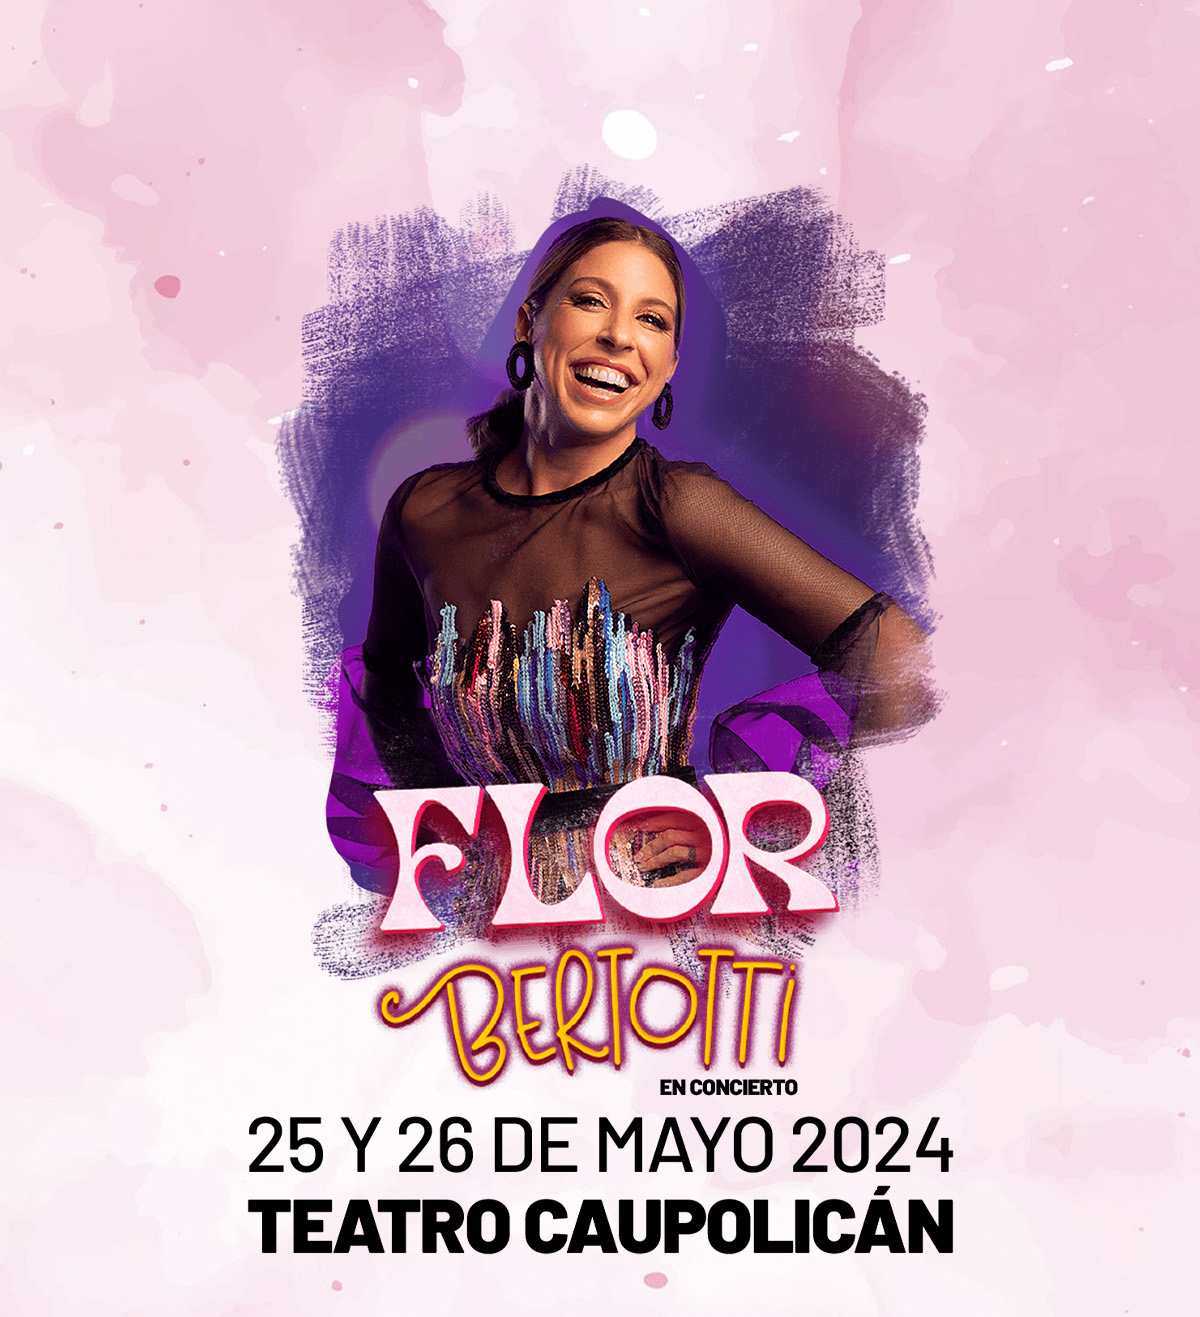 Flor Bertotti en Chile Gira 2024 Teatro Caupolicán, 25 y 26 de Mayo